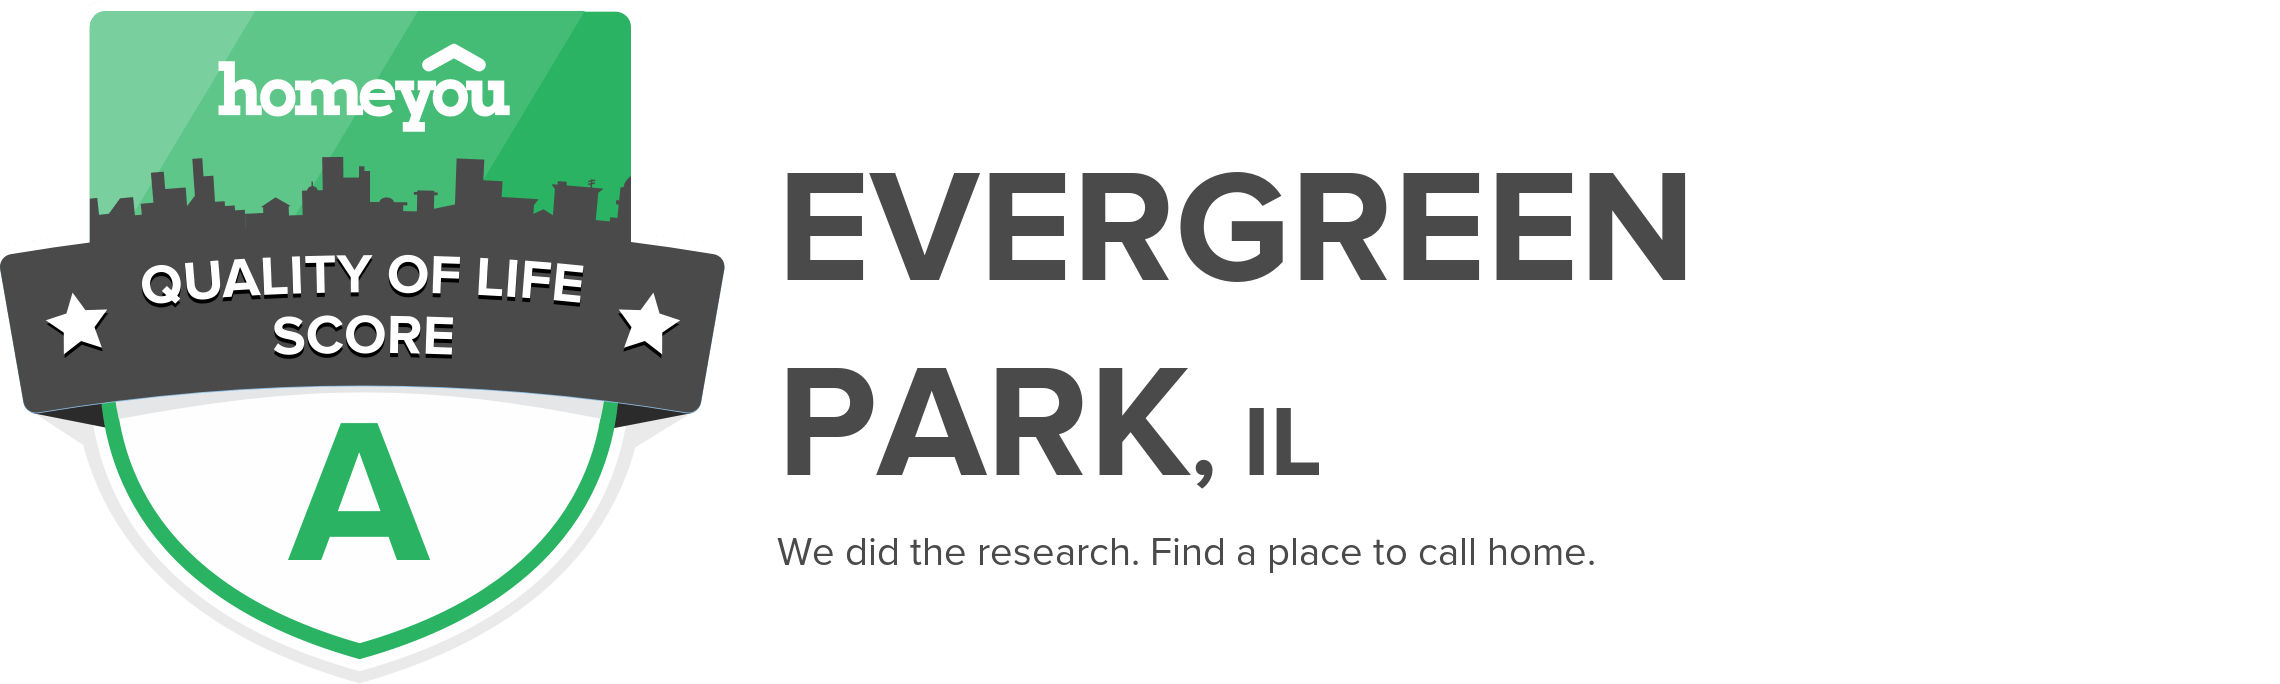 Evergreen Park, IL